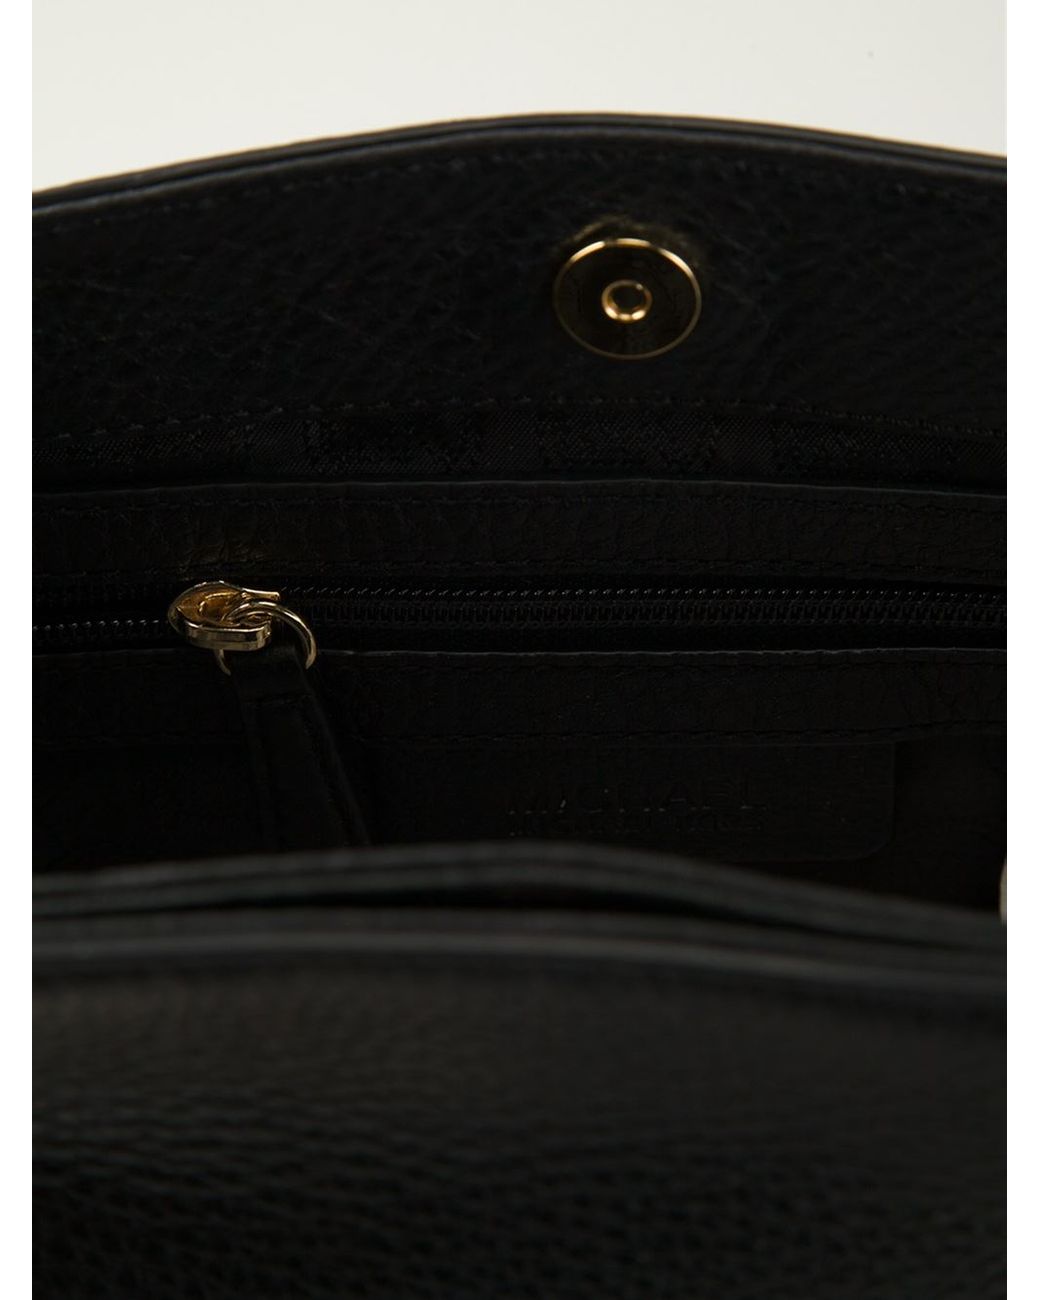 MICHAEL Michael Kors Jet Set Chain Leather Shoulder Bag - ShopStyle